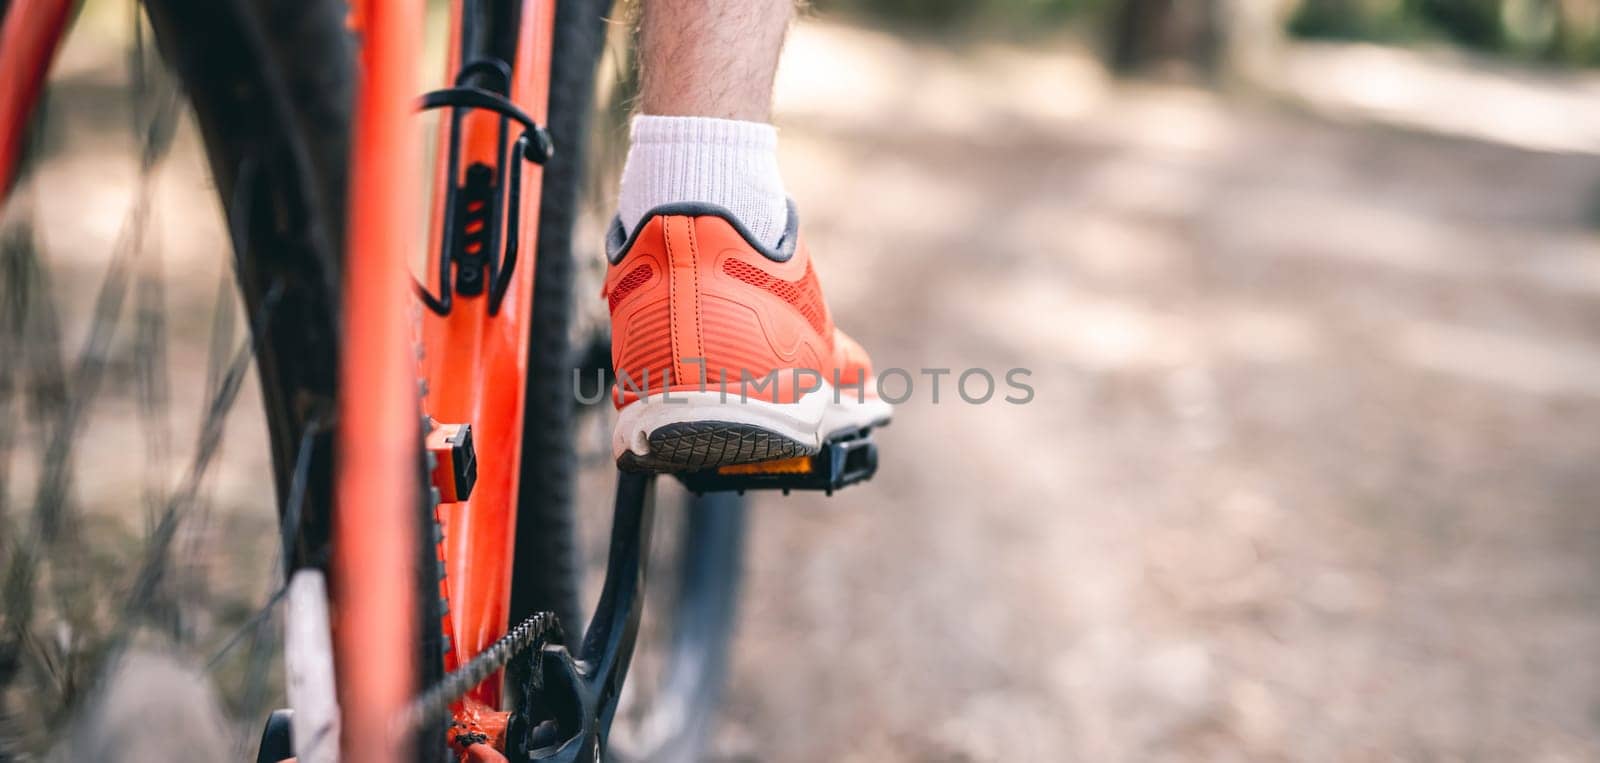 Leg in sneaker on bicycle pedal by GekaSkr